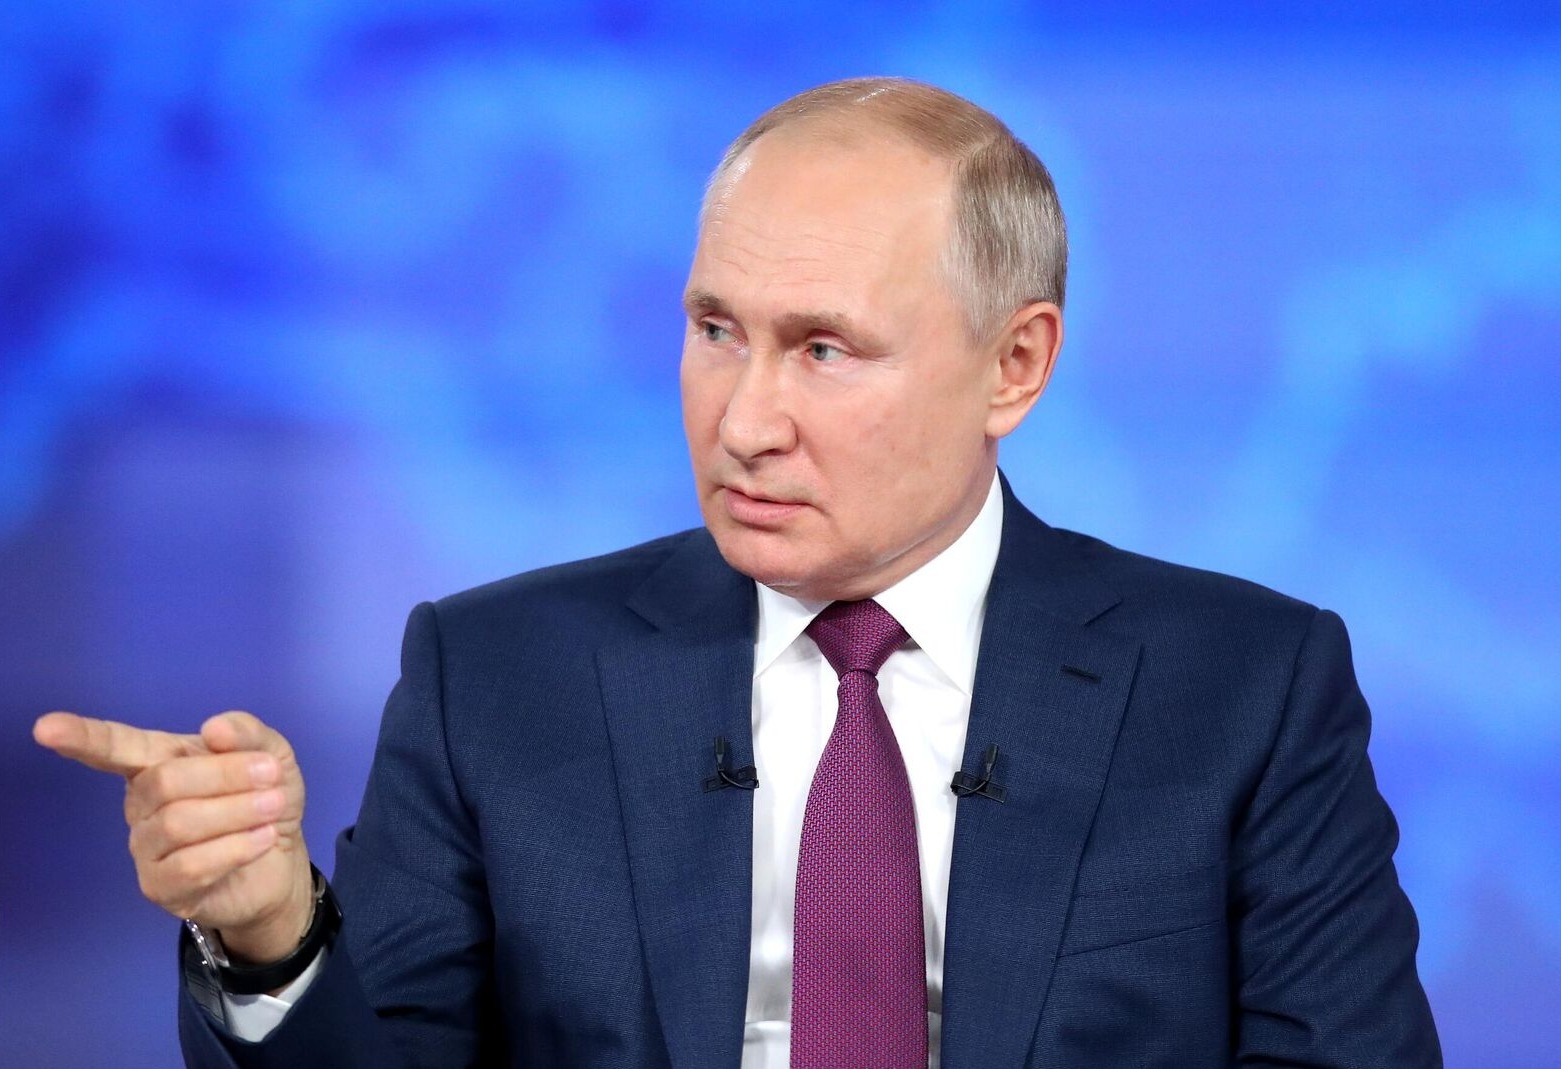 Путин заявил, что не прилетел в Якутию из-за погоды, но посетит регион позже